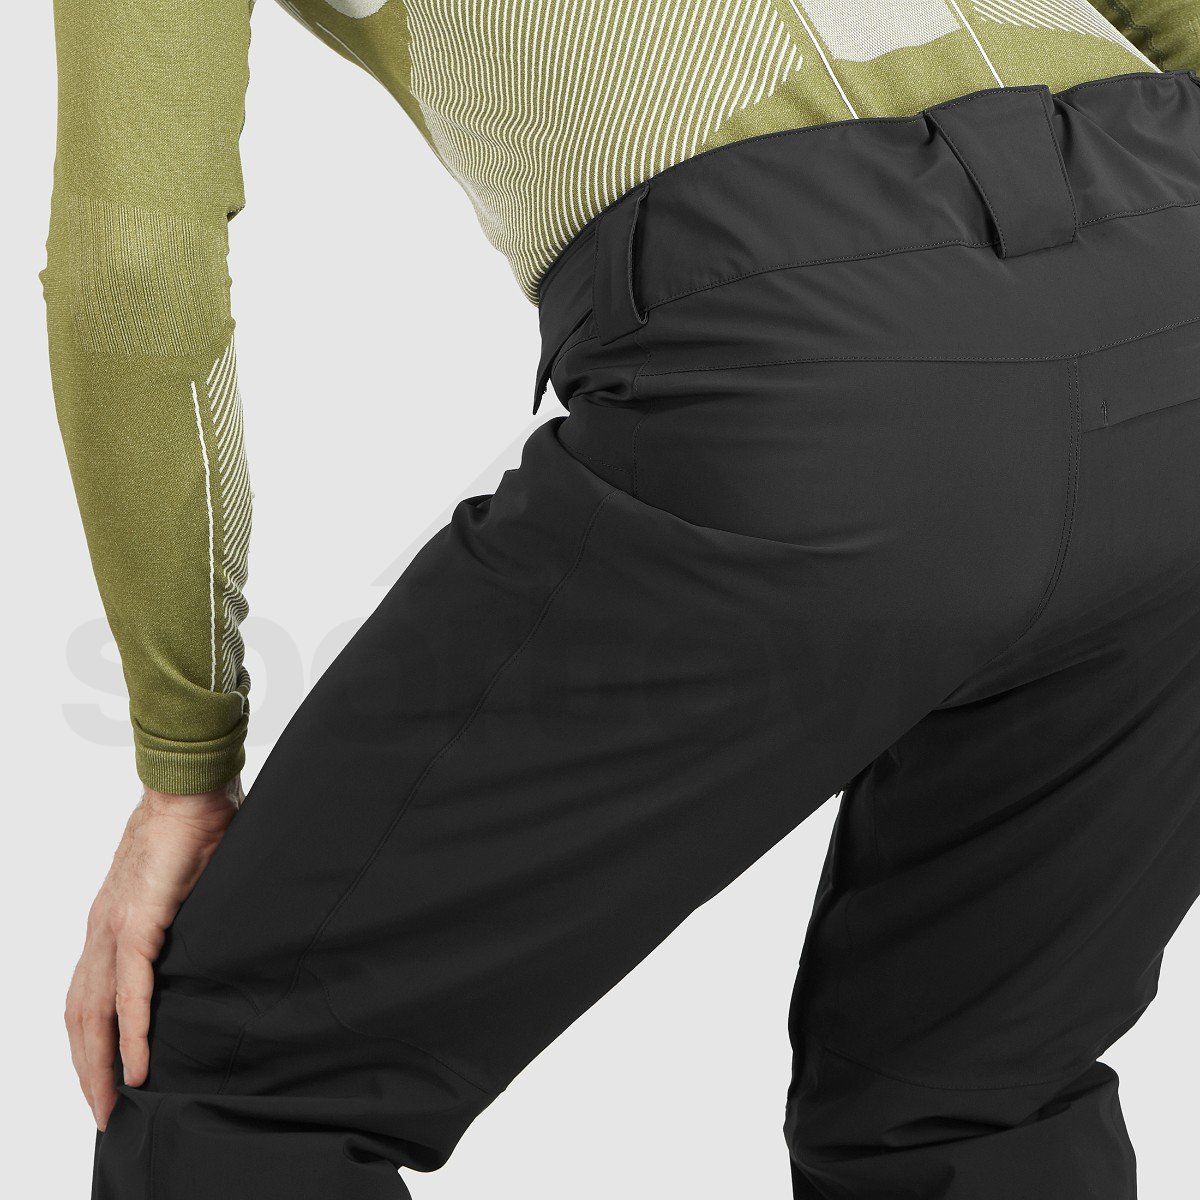 Kalhoty Salomon BRILLIANT PANT M - černá (prodloužená délka)